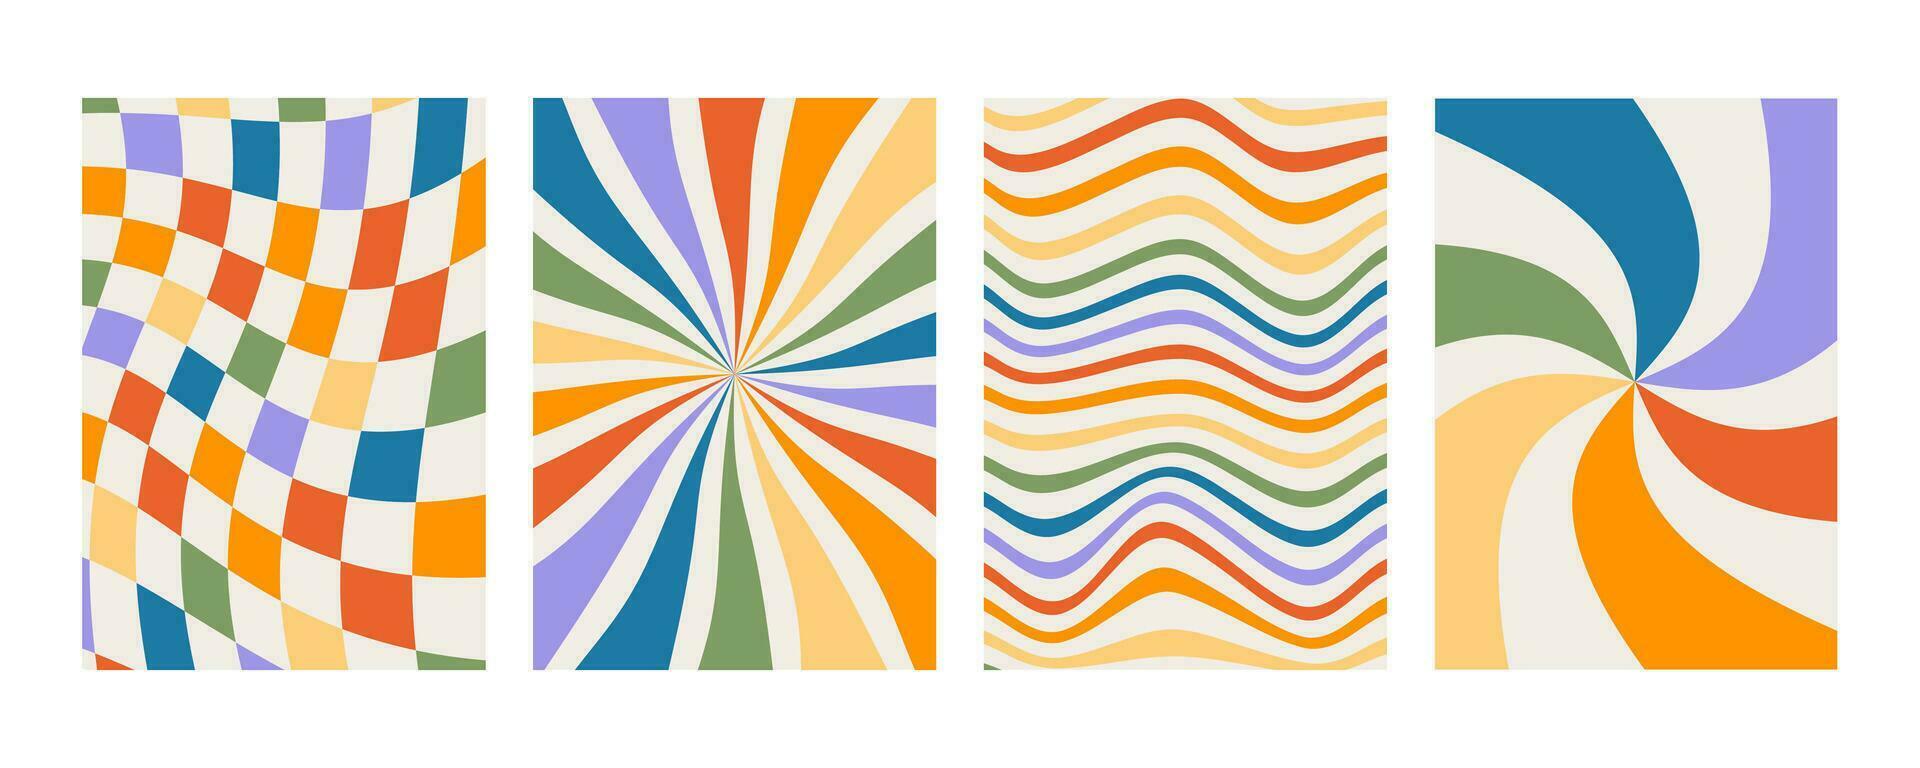 uppsättning av retro häftig grafik med regnbåge färger. rutig bakgrund med förvrängd rutor. abstrakt affisch med förvrängning. 70s geometrisk psychedelic plakat. minimalistisk gammaldags konst design. vektor